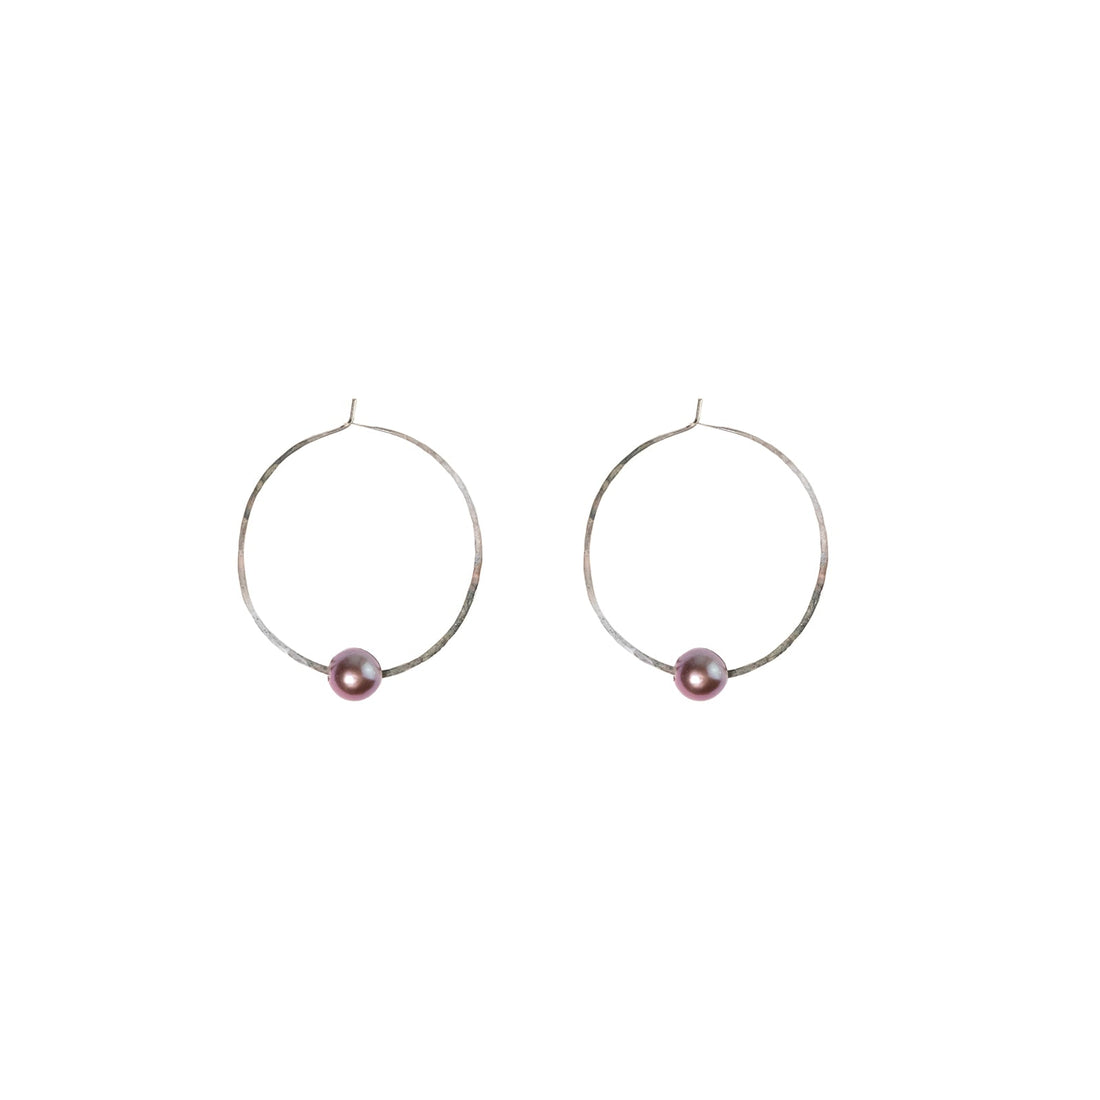 Kasia Earrings, 2" Silver Hoop and Edison Pink Pearl Earrings Sayulita Sol 